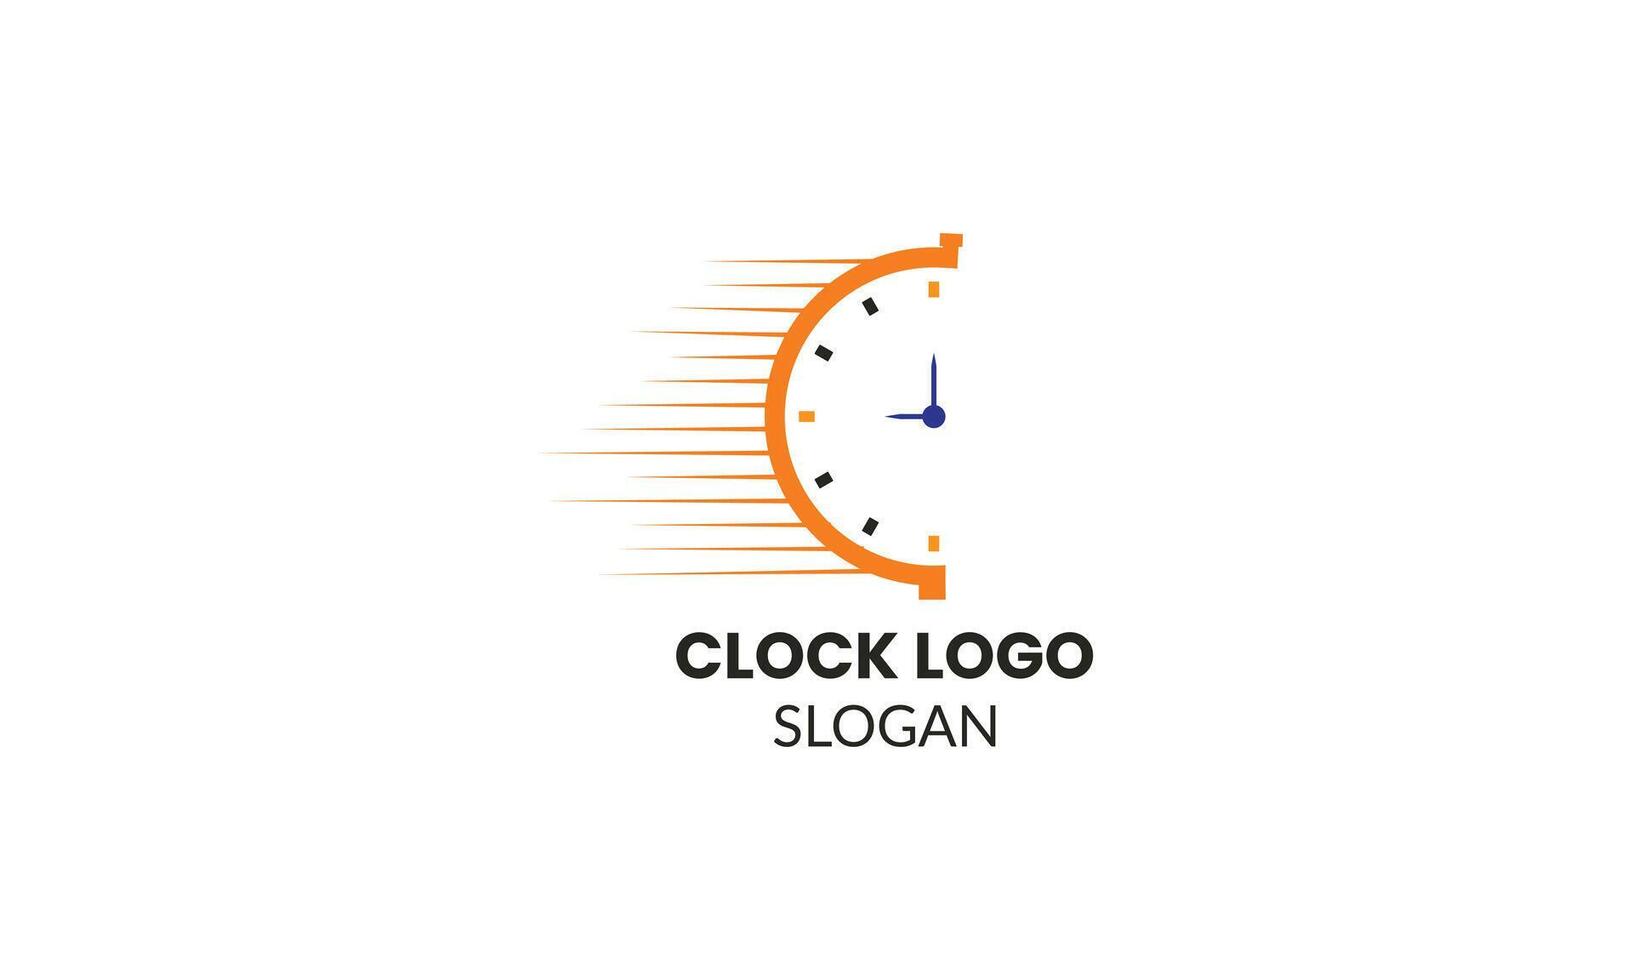 onze logo, met haar ingewikkeld klok ontwerp, is een testament naar de precisie en aandacht naar detail dat definieert onze merk. vector